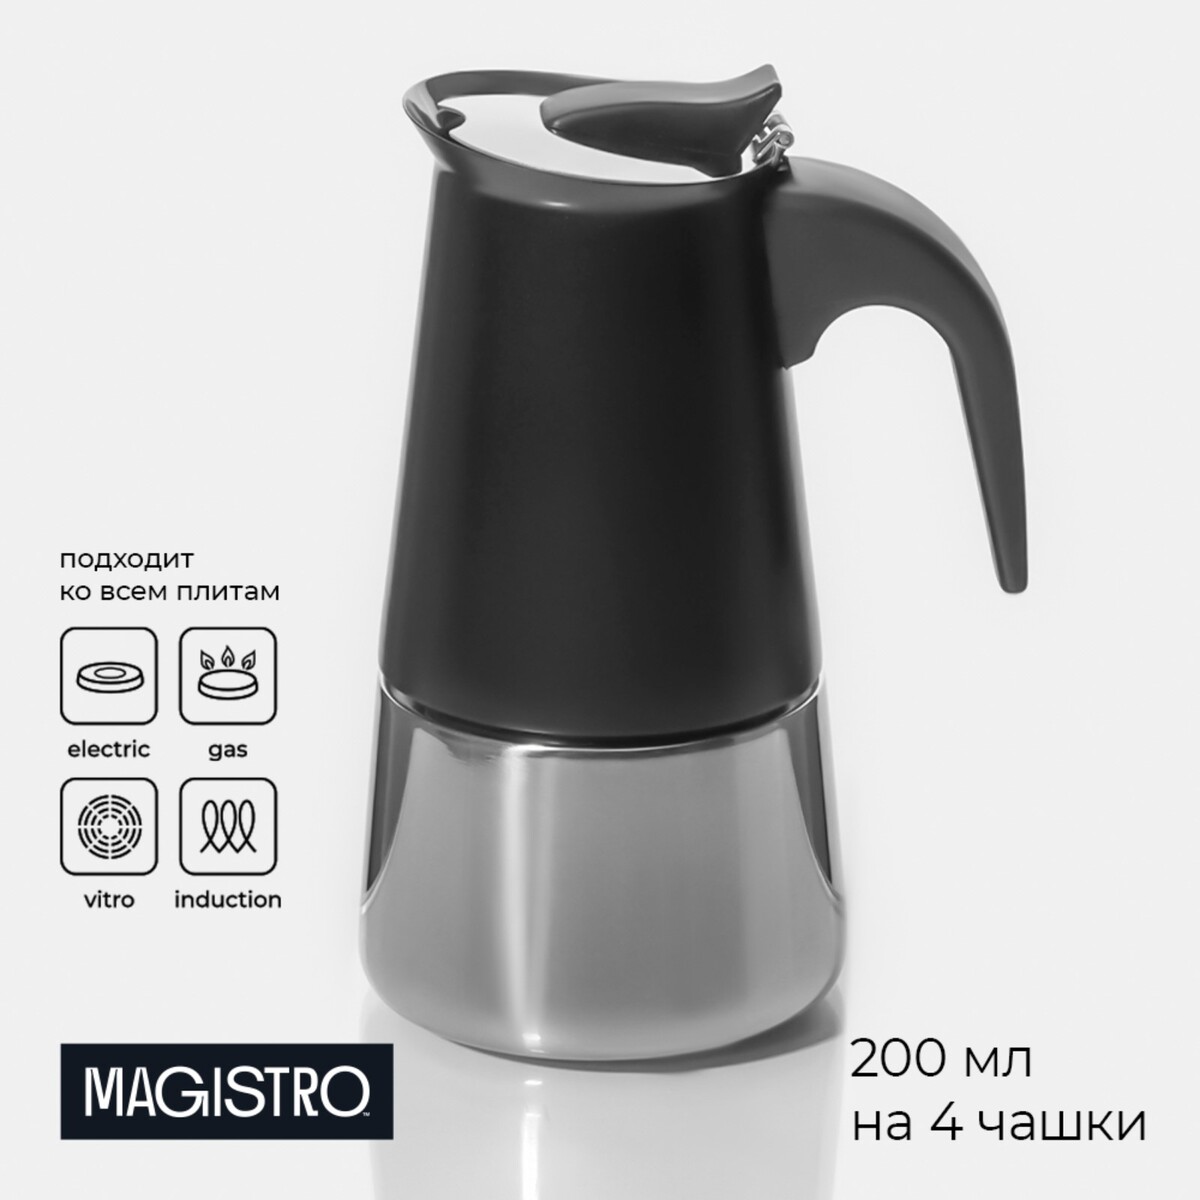 Кофеварка гейзерная magistro classic black, на 4 чашки, 200 мл, цвет черный